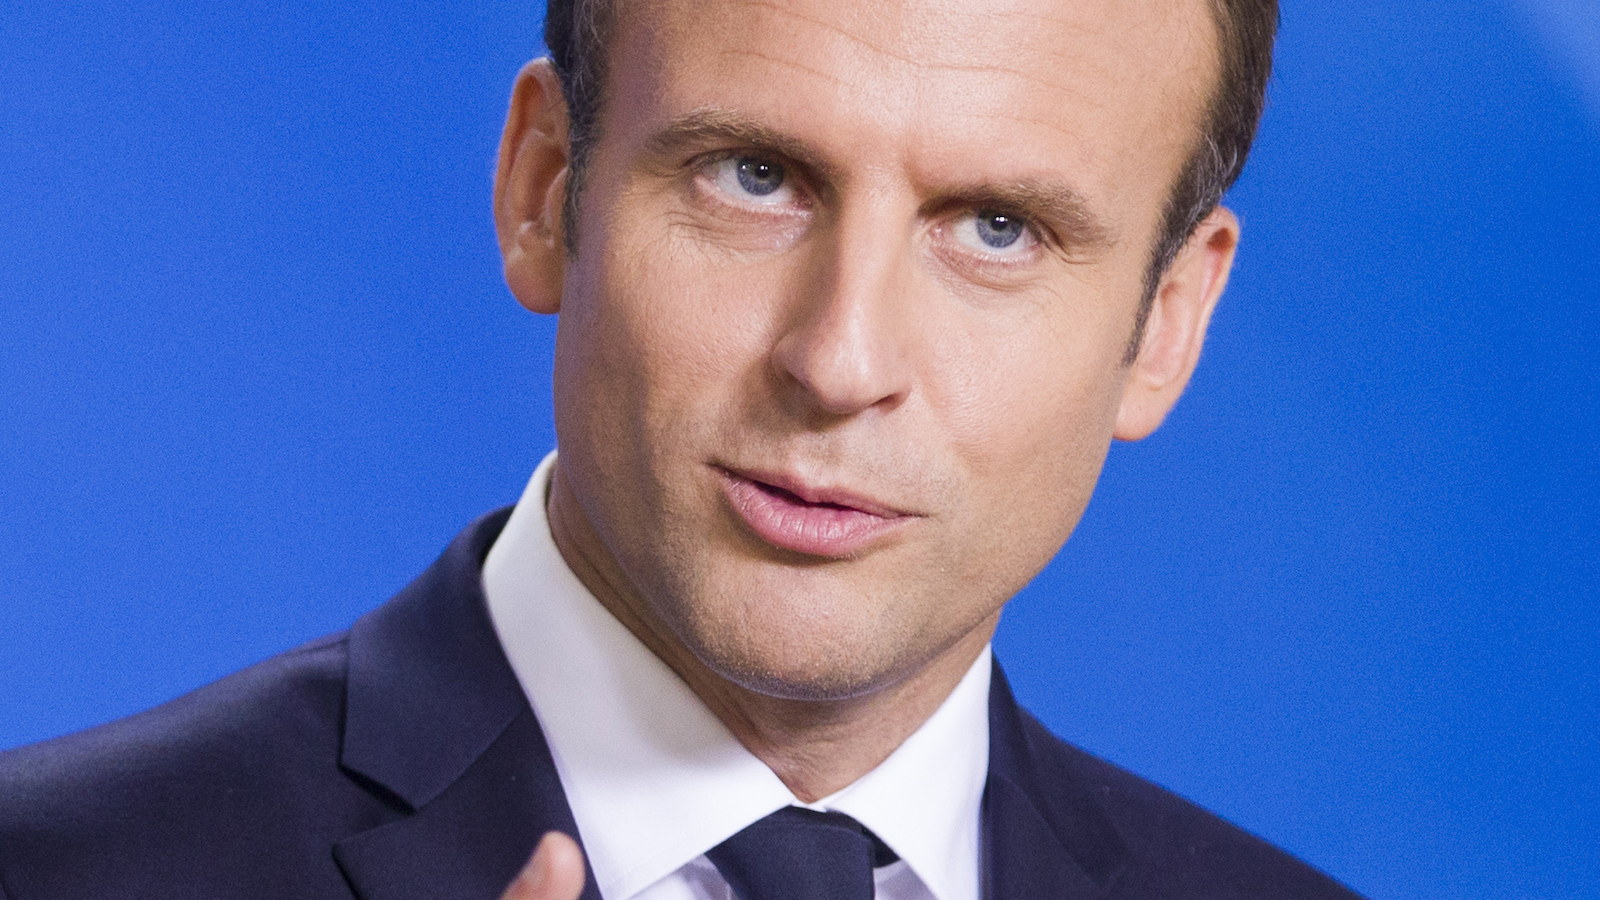 Macron vil vise Europa vejen. Dén ambition kan blive enden på EUKommentar af Kenneth Kristensen Berth